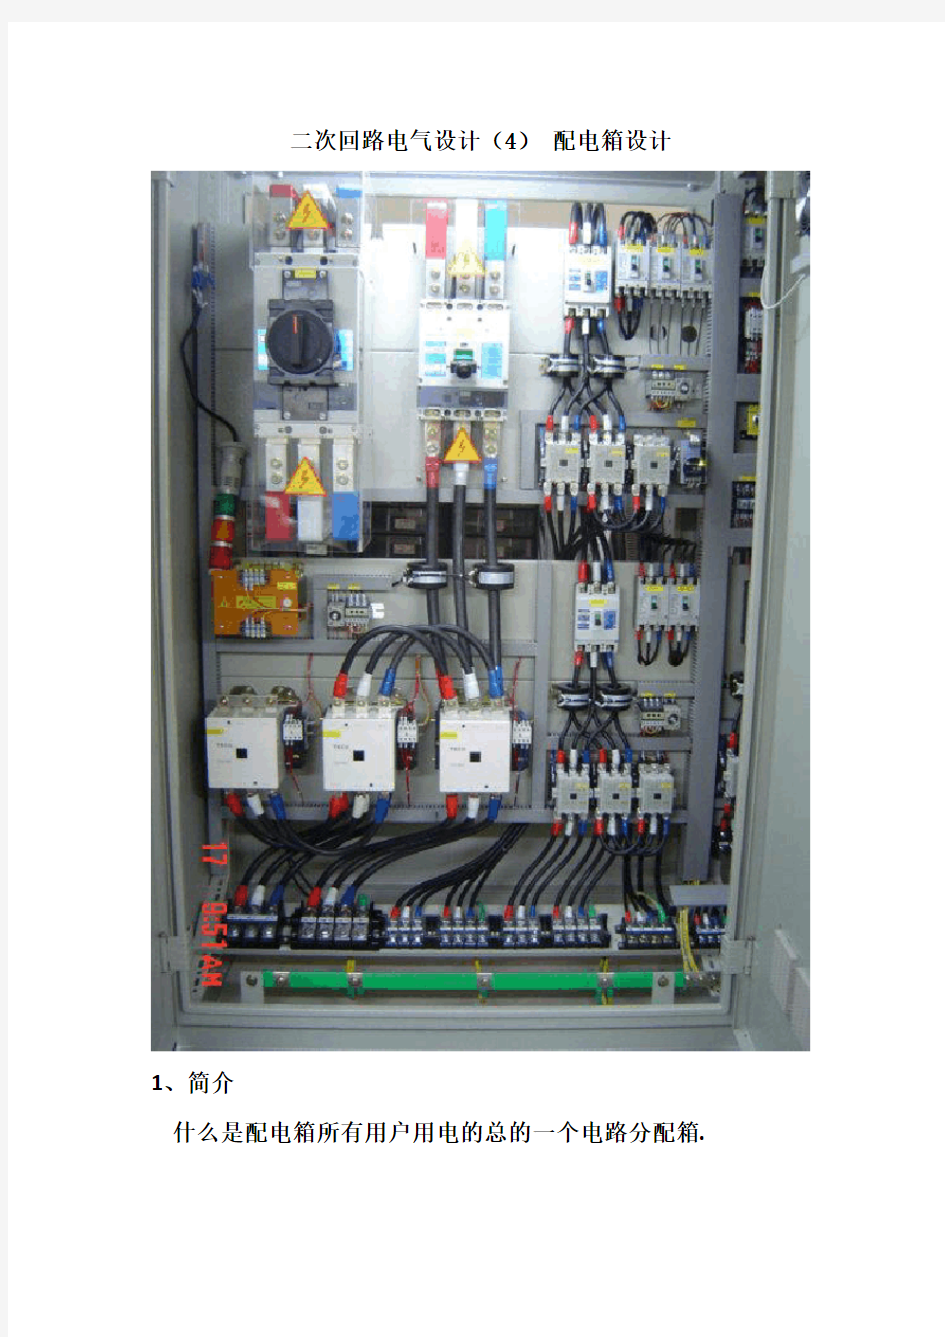 二次回路电气设计(4) 配电箱设计